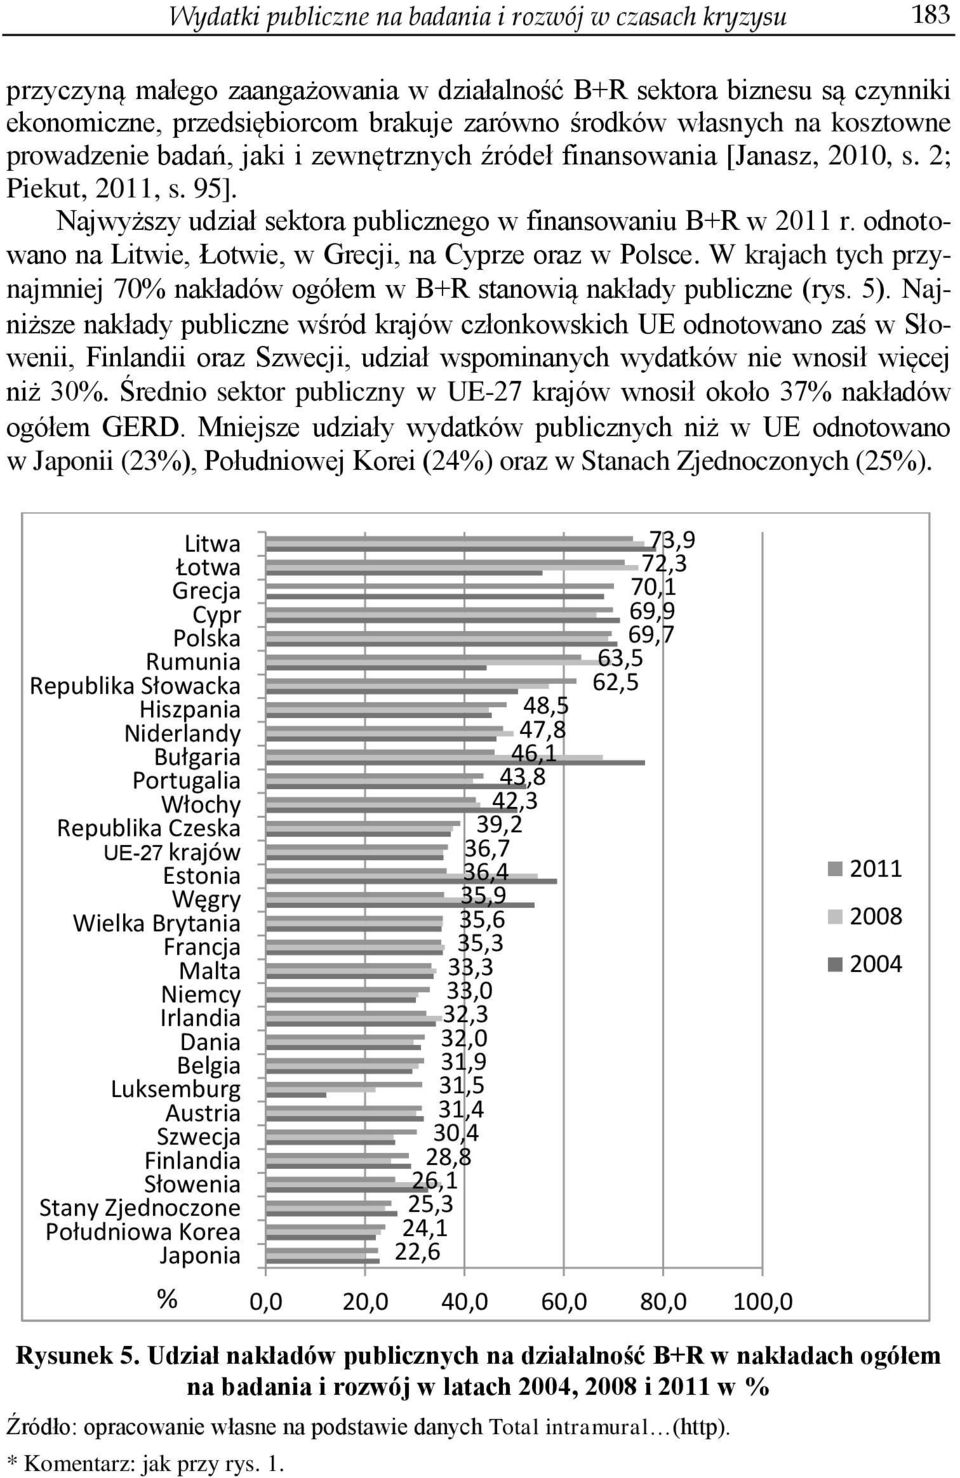 odnotowano na Litwie, Łotwie, w Grecji, na ze oraz w Polsce. W krajach tych przynajmniej 70% nakładów ogółem w B+R stanowią nakłady publiczne (rys. 5).